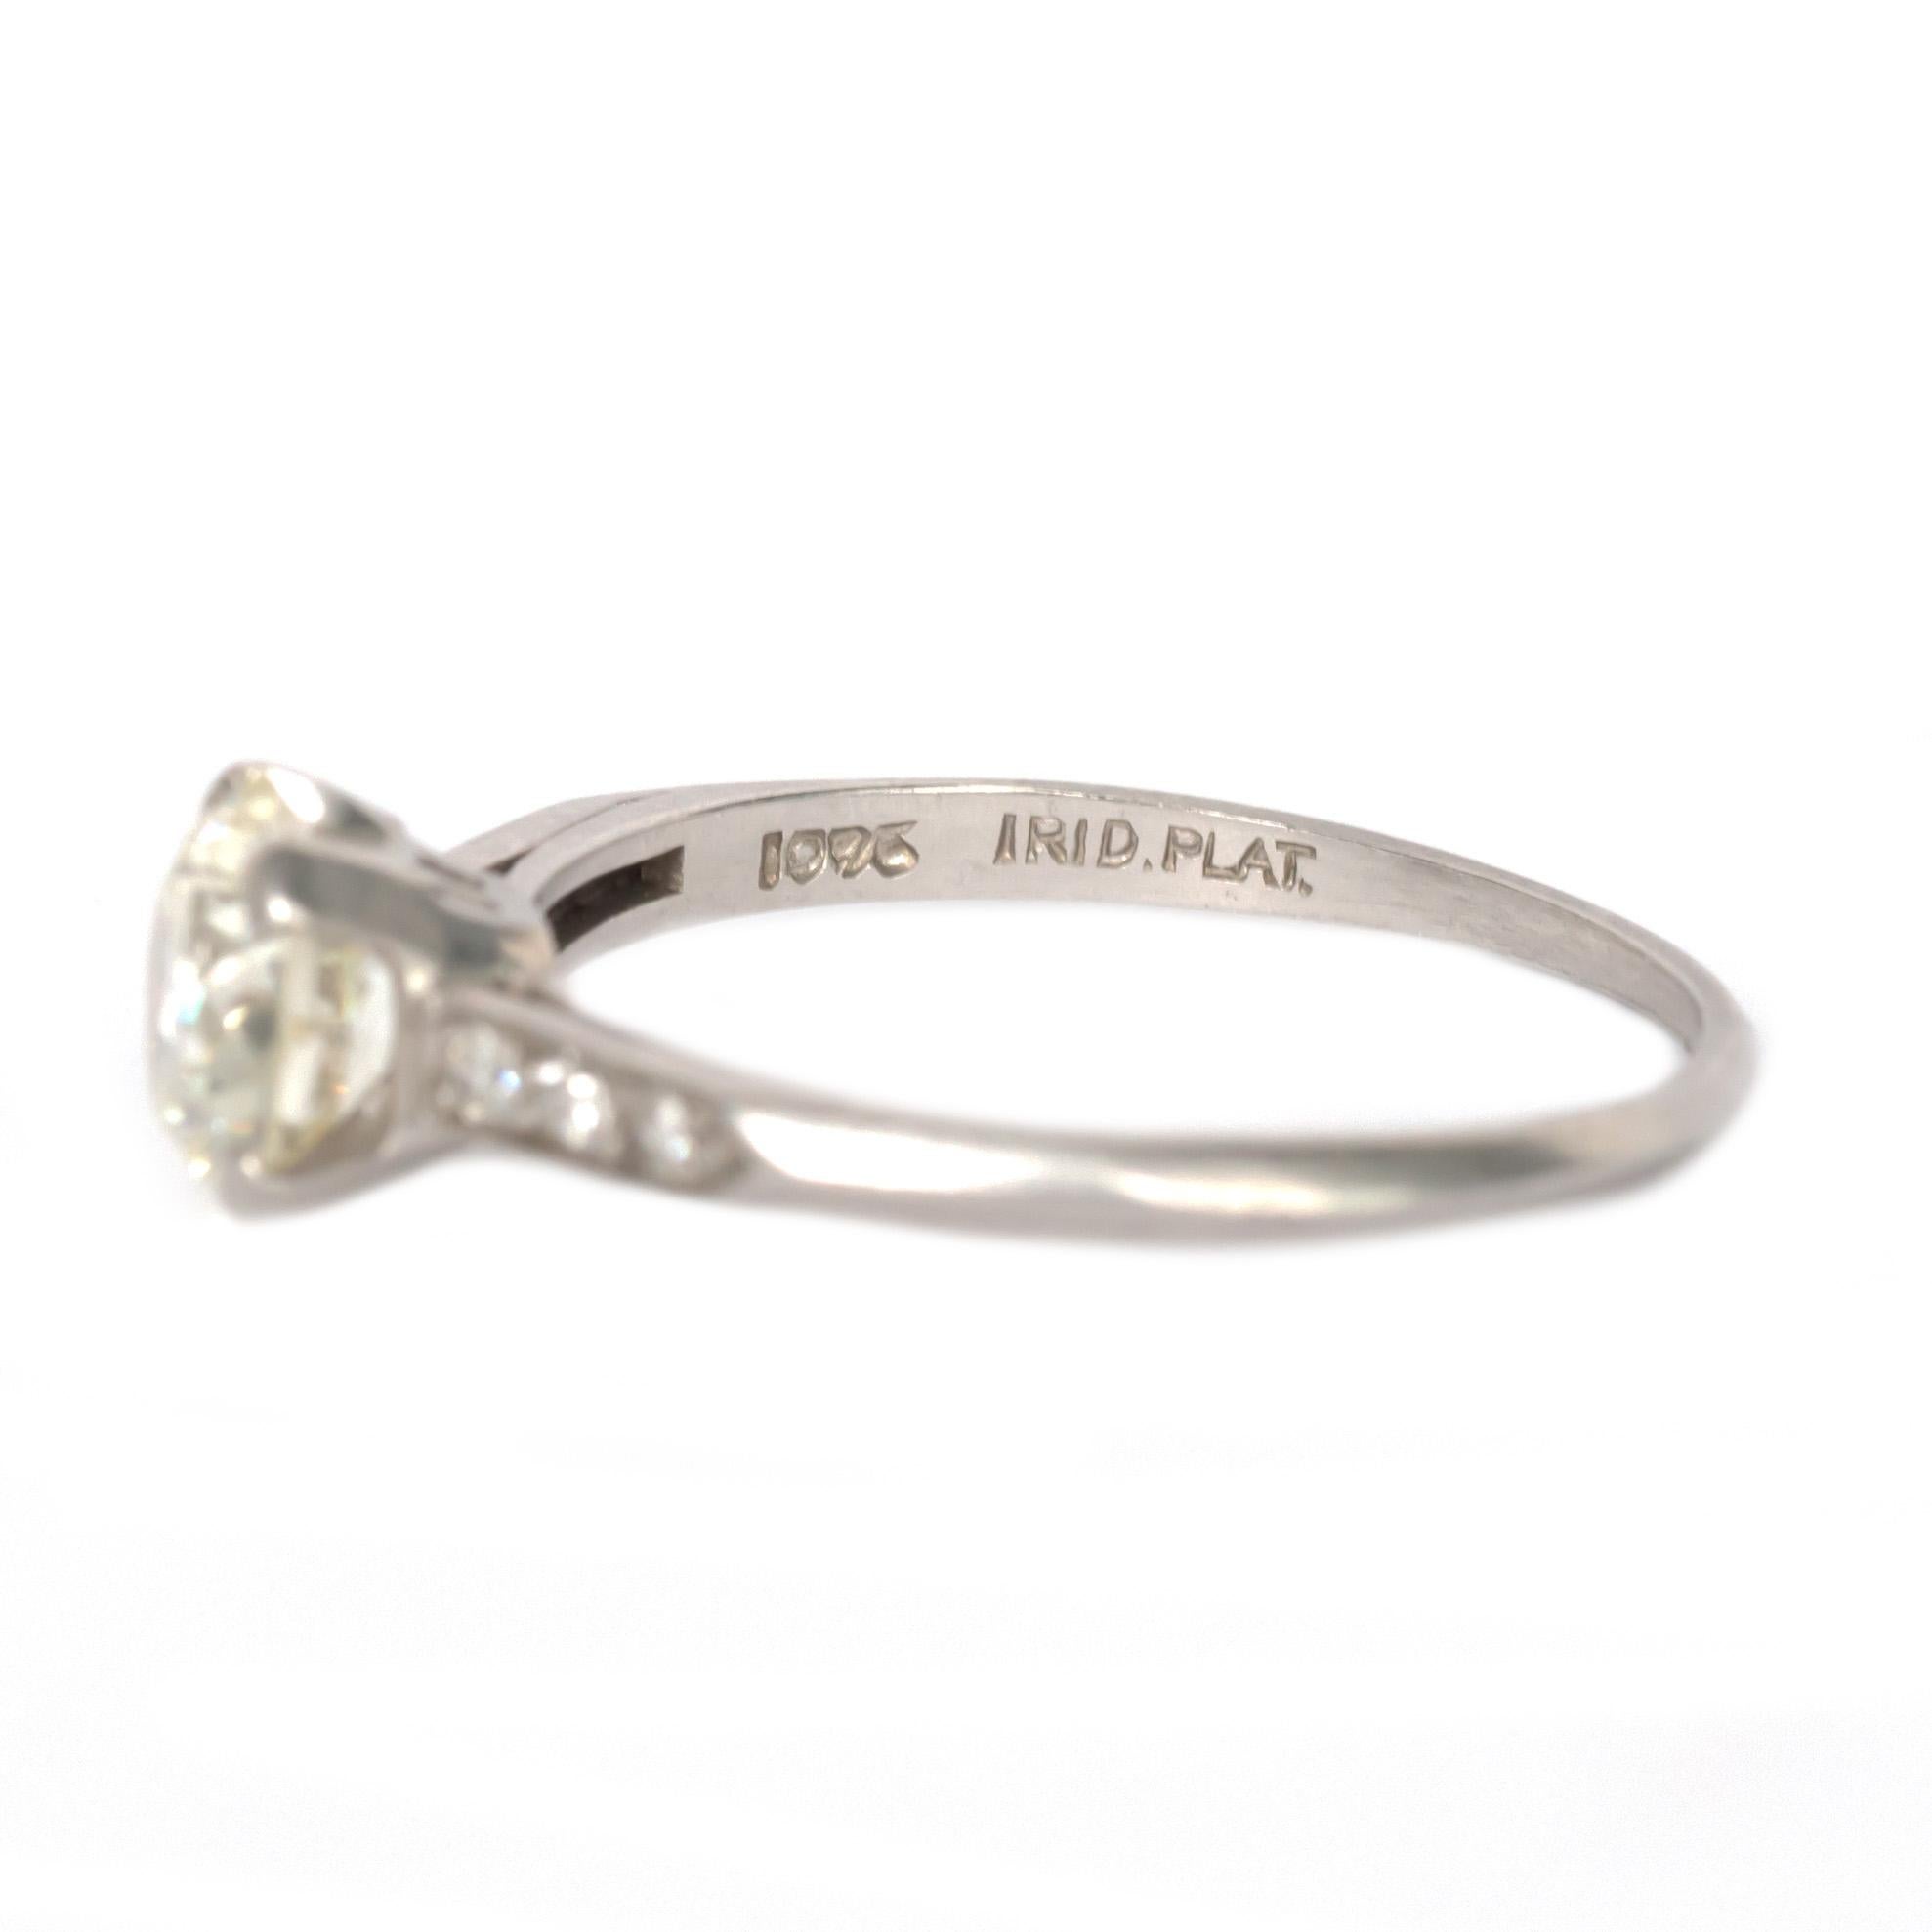 1.15 Carat Diamond Platinum Engagement Ring In Good Condition For Sale In Atlanta, GA